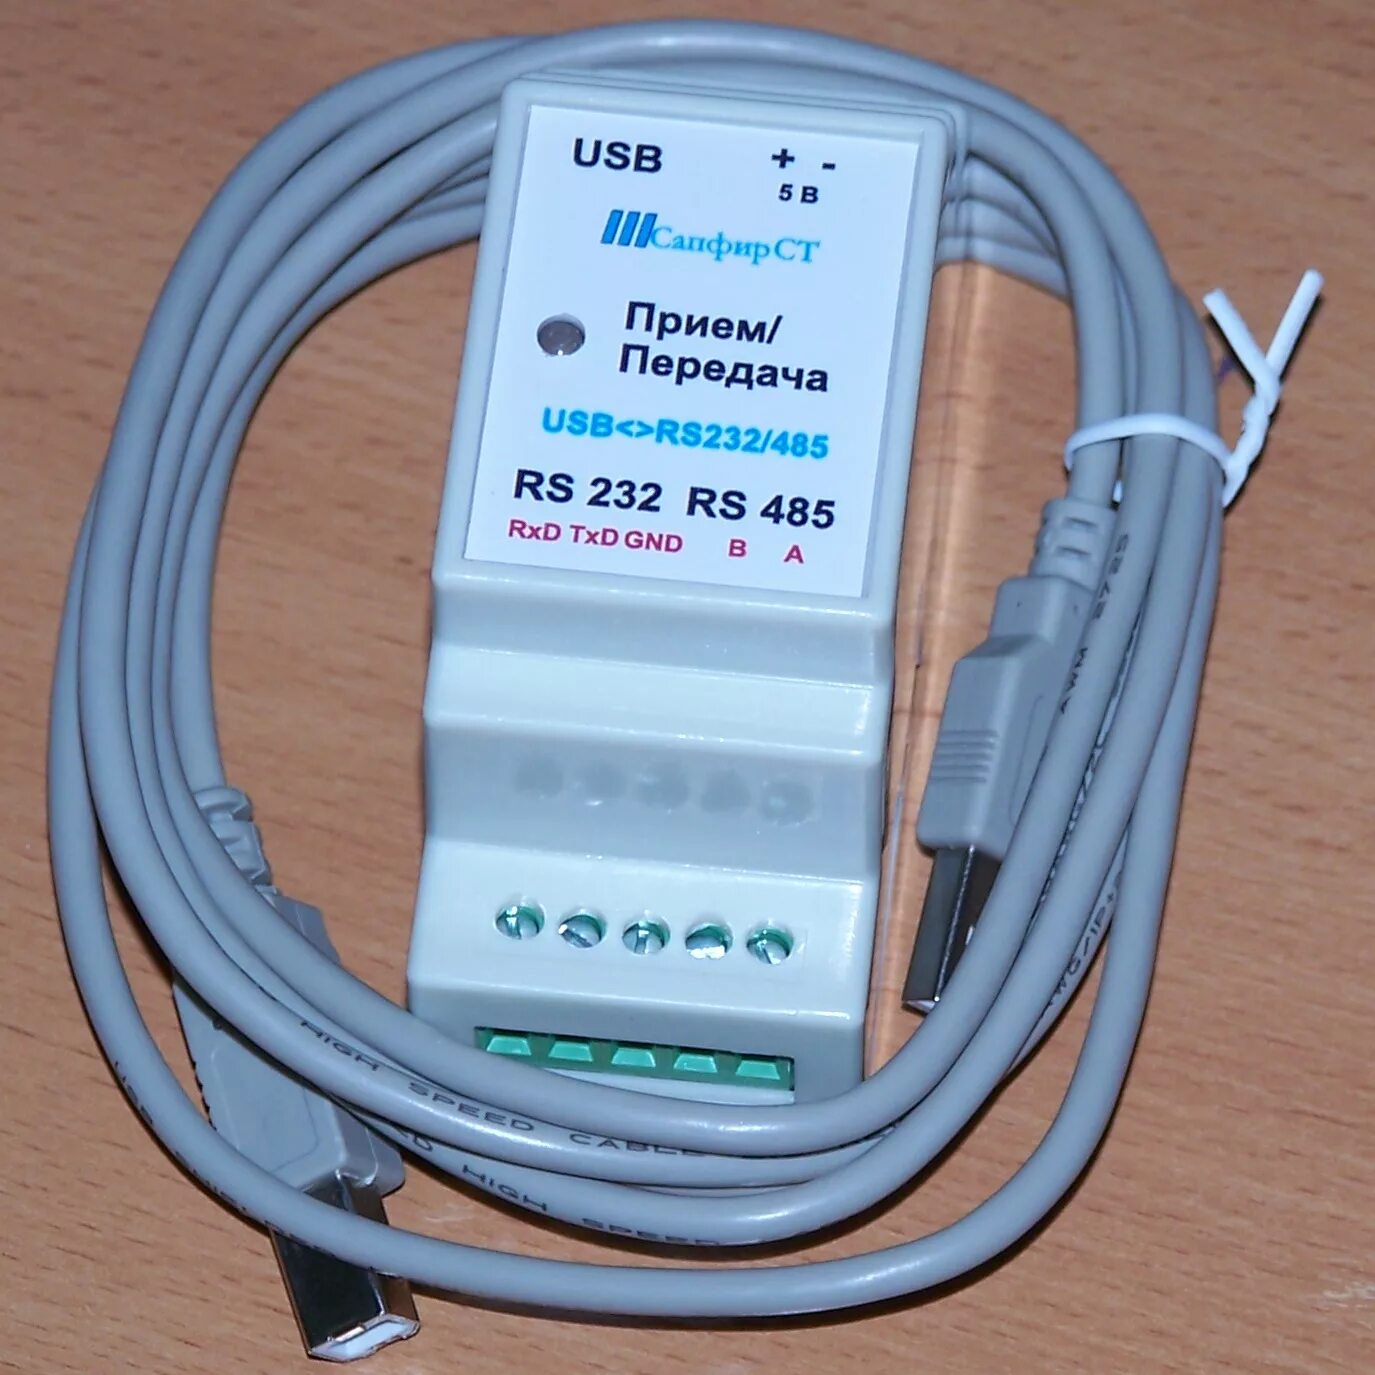 Usb 485 купить. Преобразователь интерфейса сапфир USB-rs232/485. Адаптер сигналов USB-RS-232/RS-485 взлет. Преобразователь интерфейсов rs232-rs485. Адаптер сигналов взлет АС USB-RS-232/485.